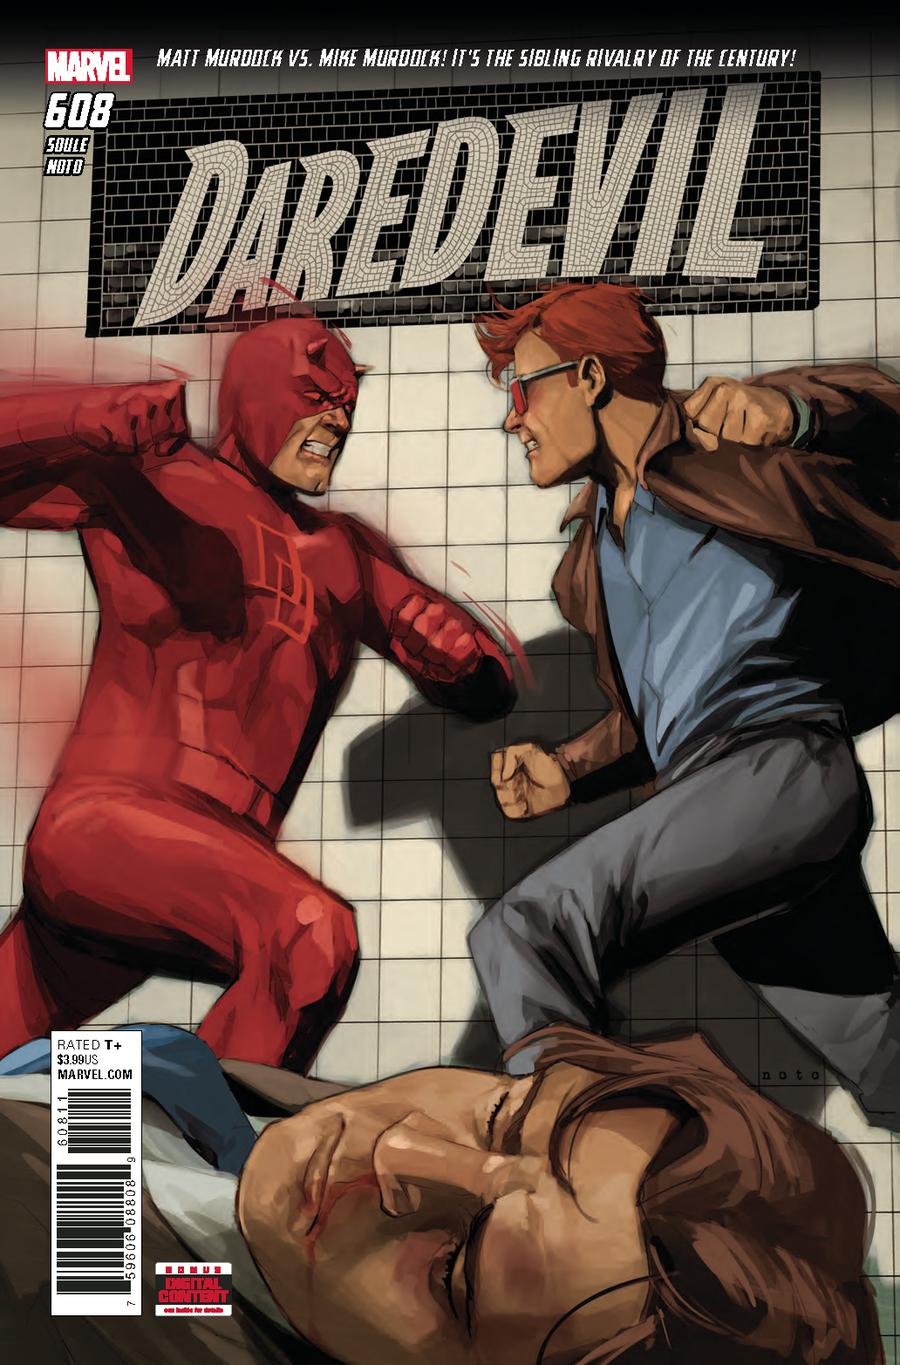 Daredevil Vol 5 #608